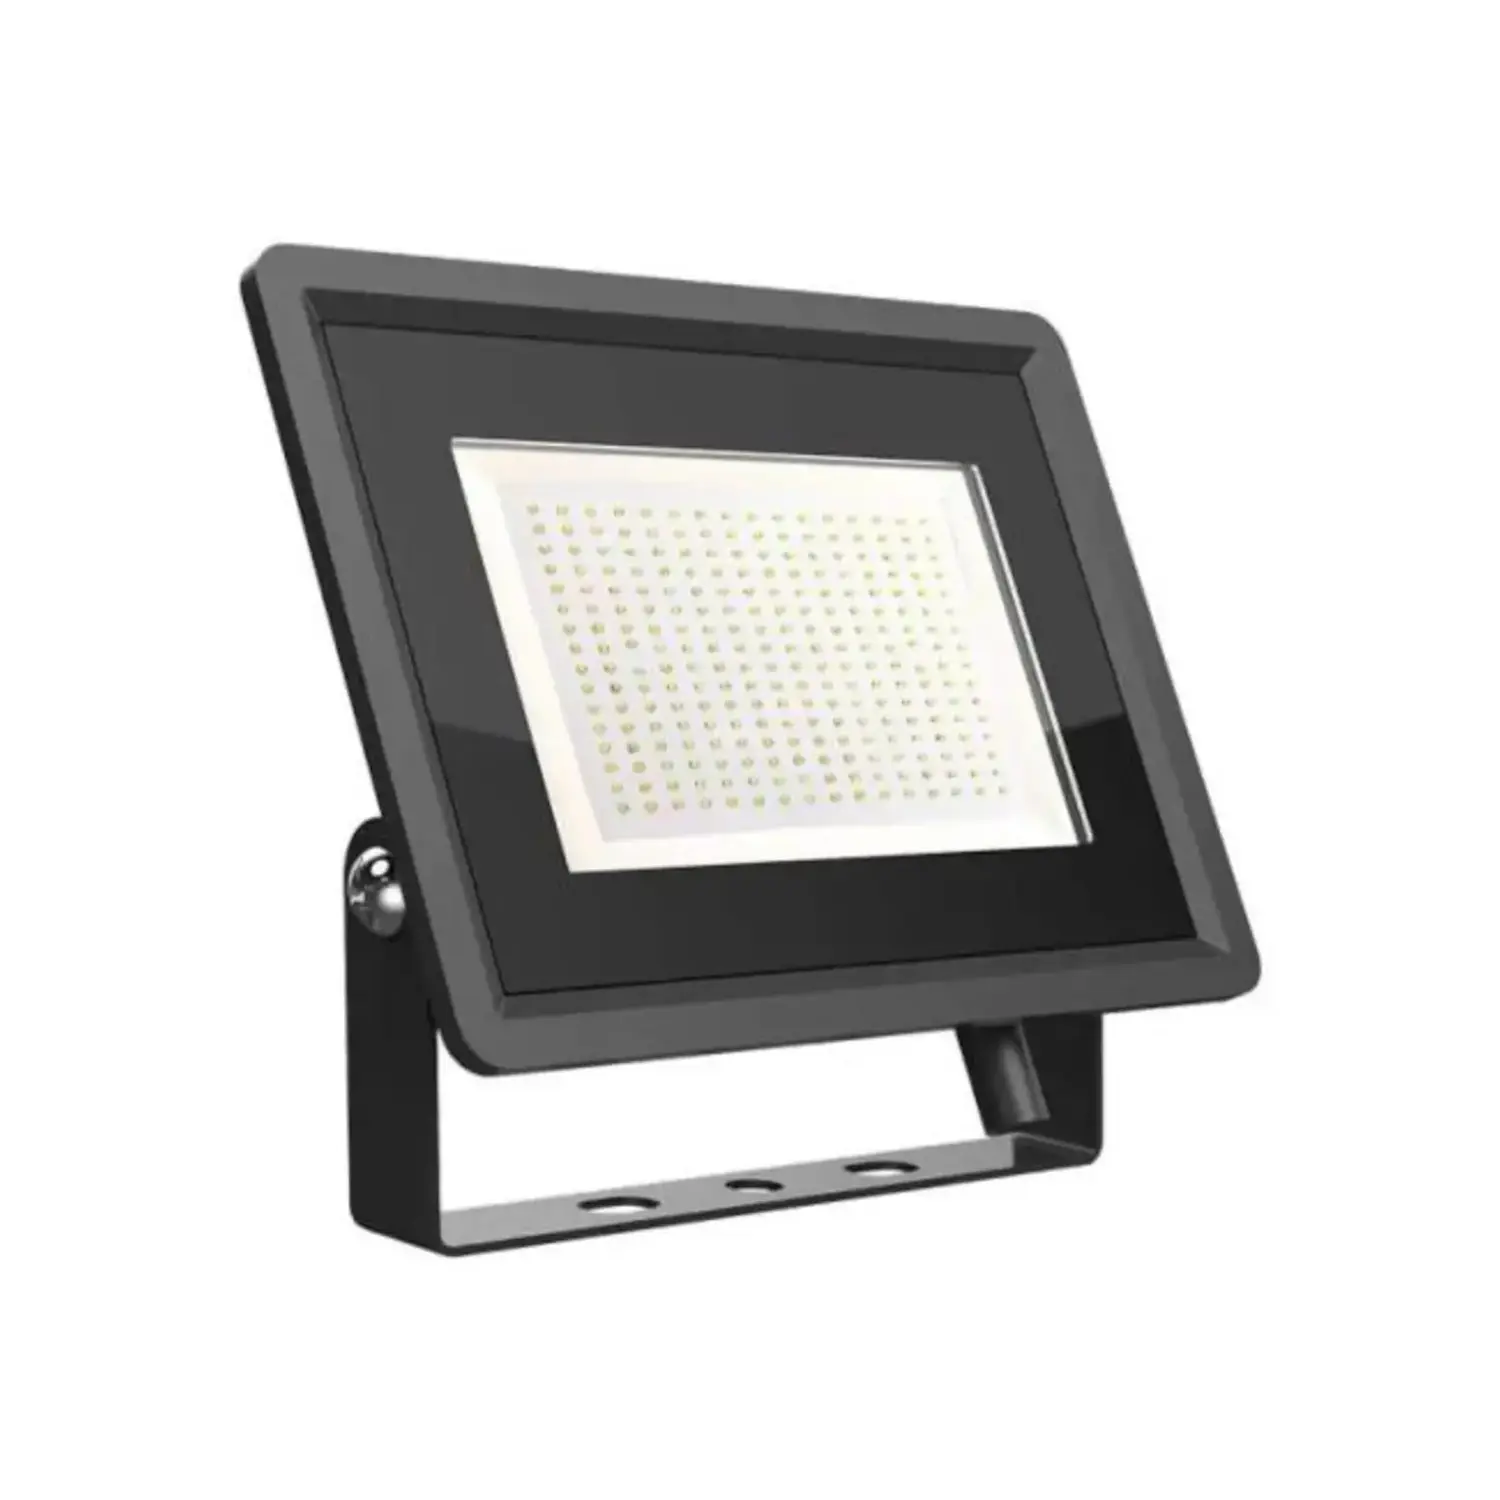 immagine del prodotto faro proiettore esterno led smd ultraluminoso slim ip65 100 watt bianco freddo